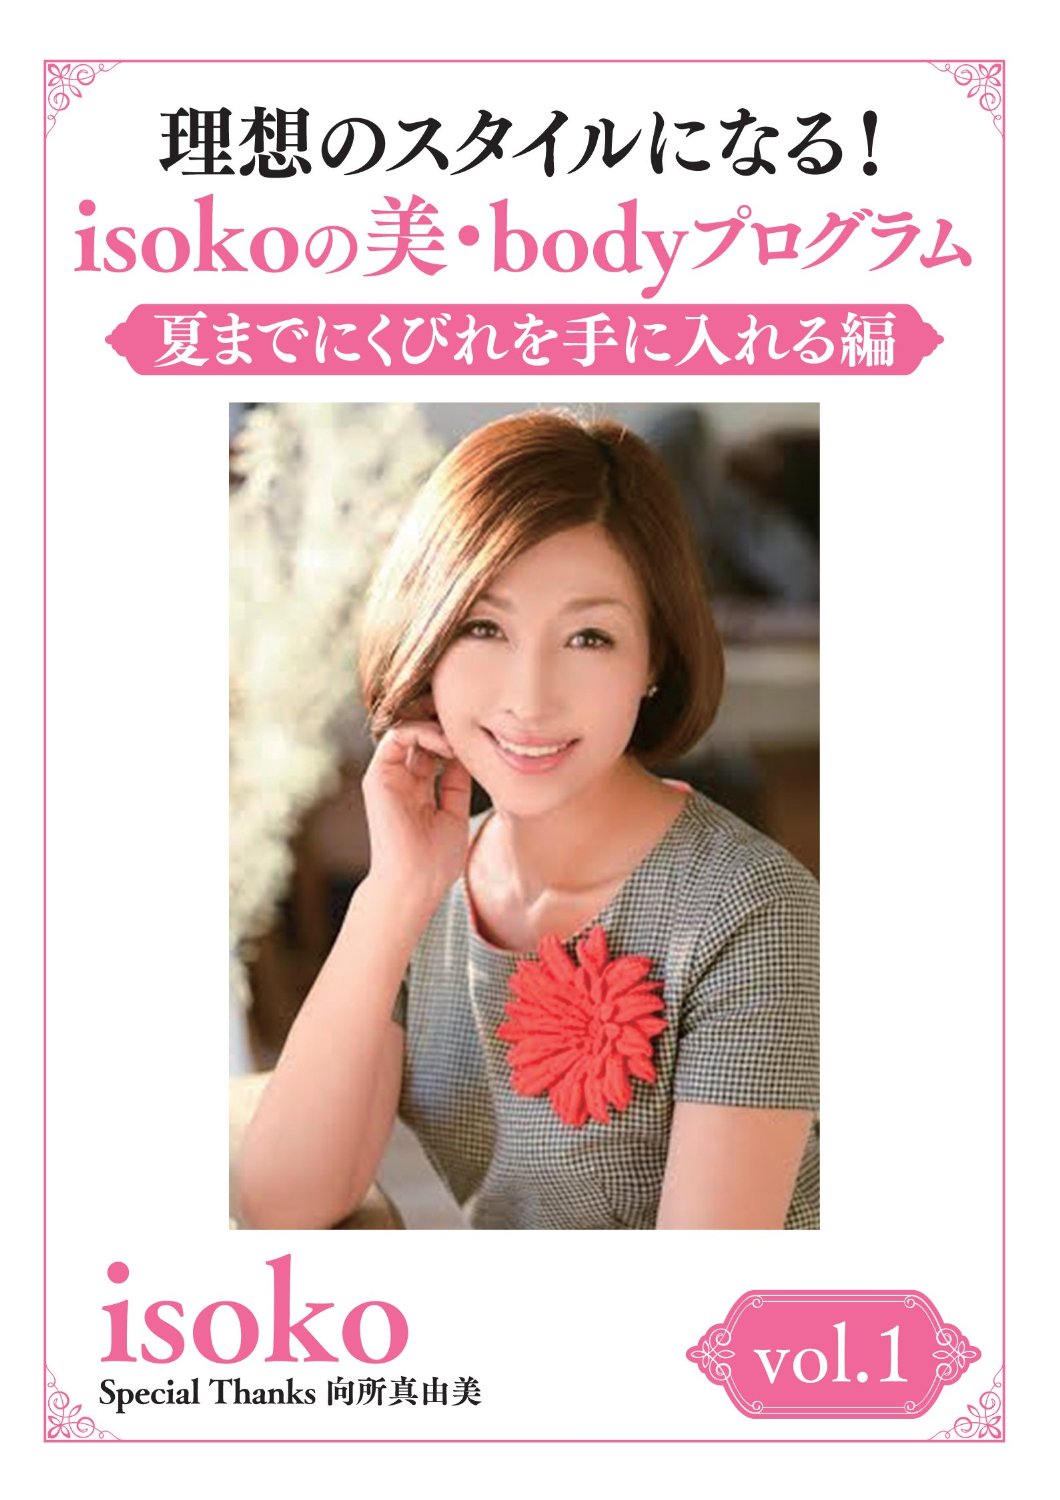 理想のスタイルになる! isokoの美・bodyプログラム vol.1夏までにくびれを手に入れる編【予約特典付き】 [DVD]